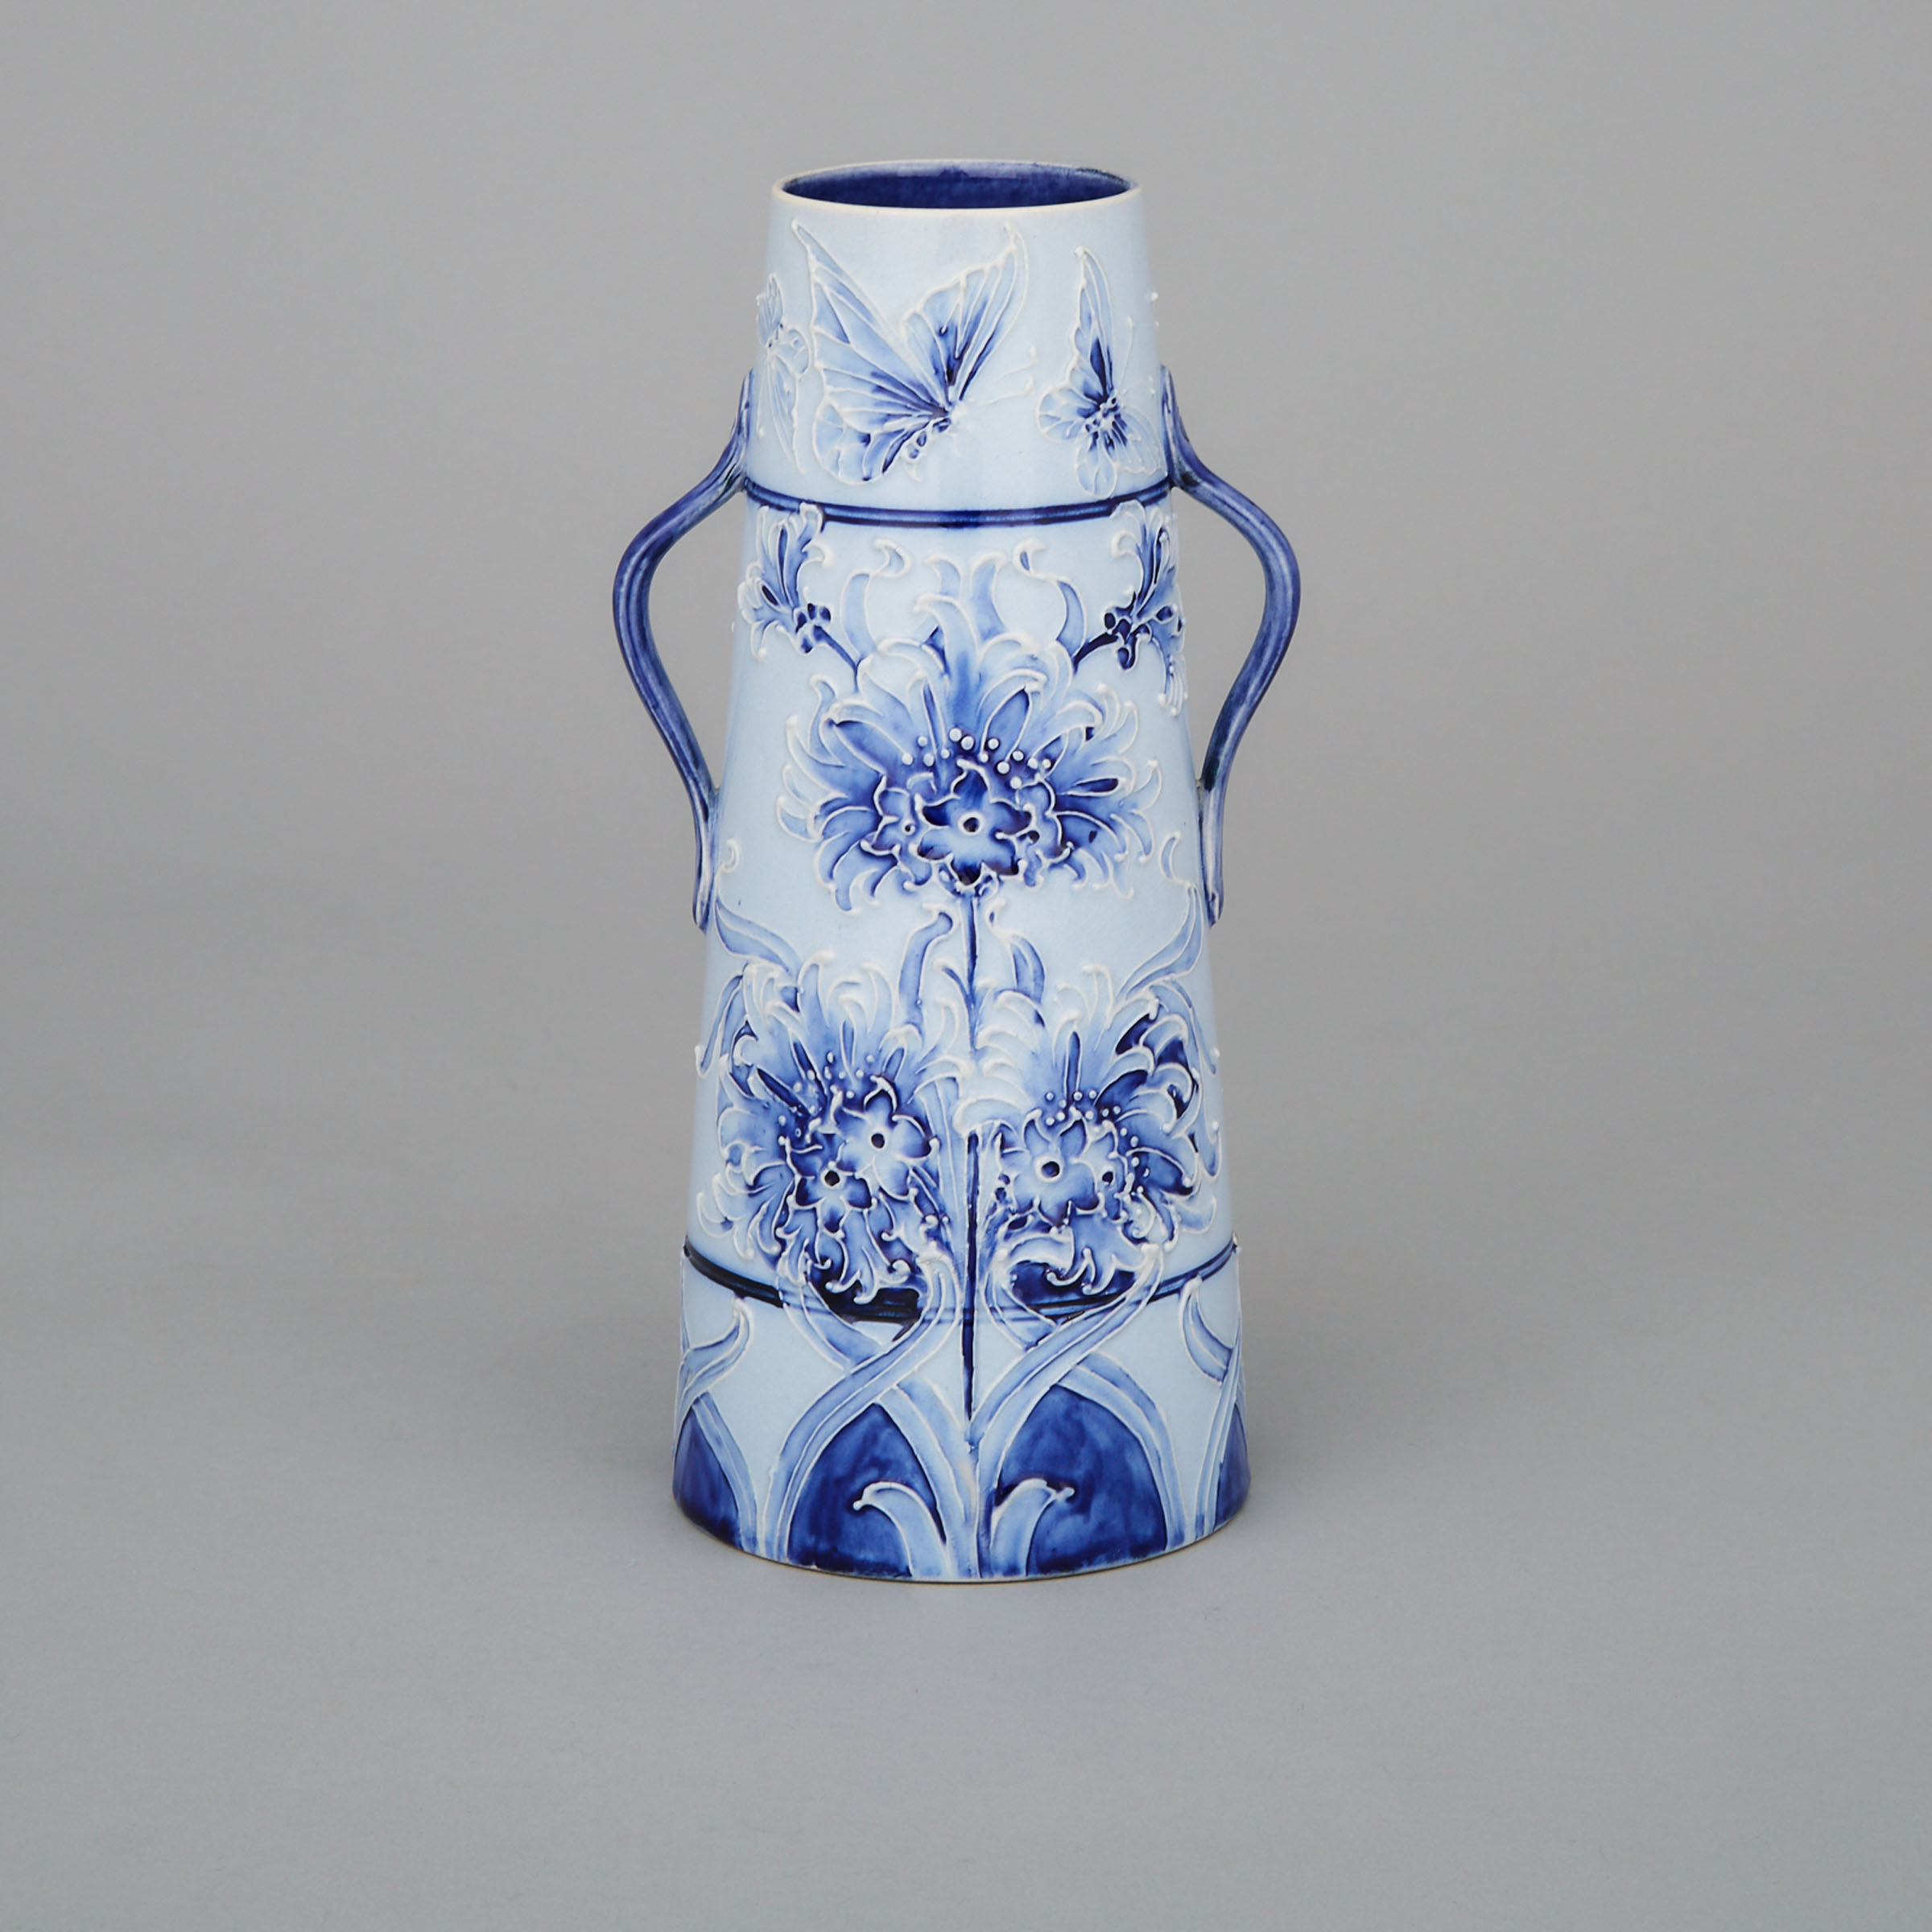 Macintyre Moorcroft Florian Ware Two-Handled Butterfly Vase, c.1900